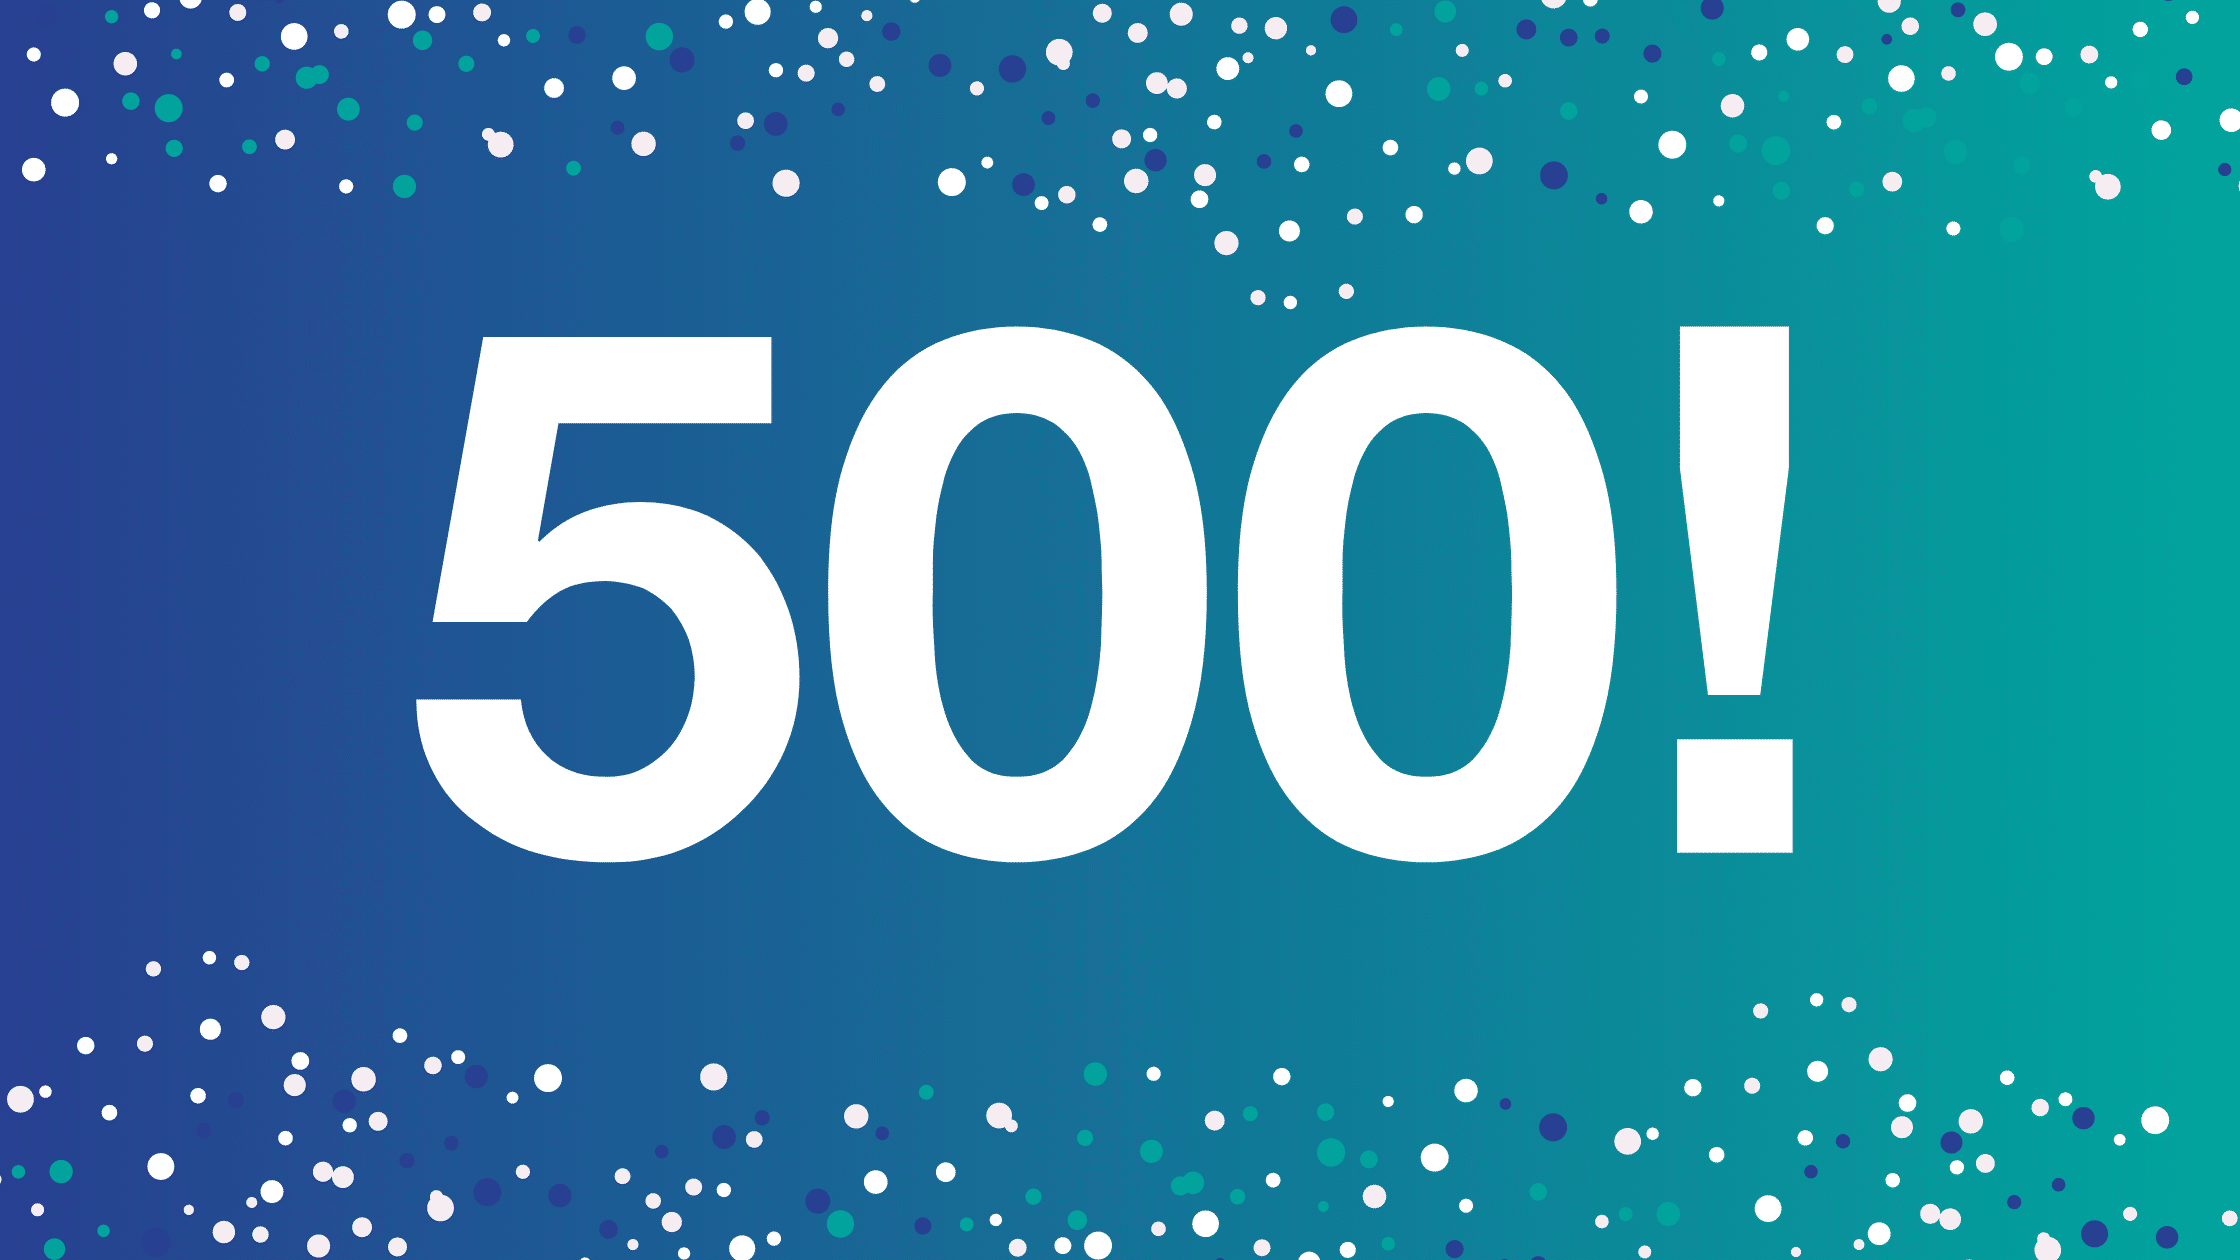 WorkGuru | WorkGuru celebrates our 500th release